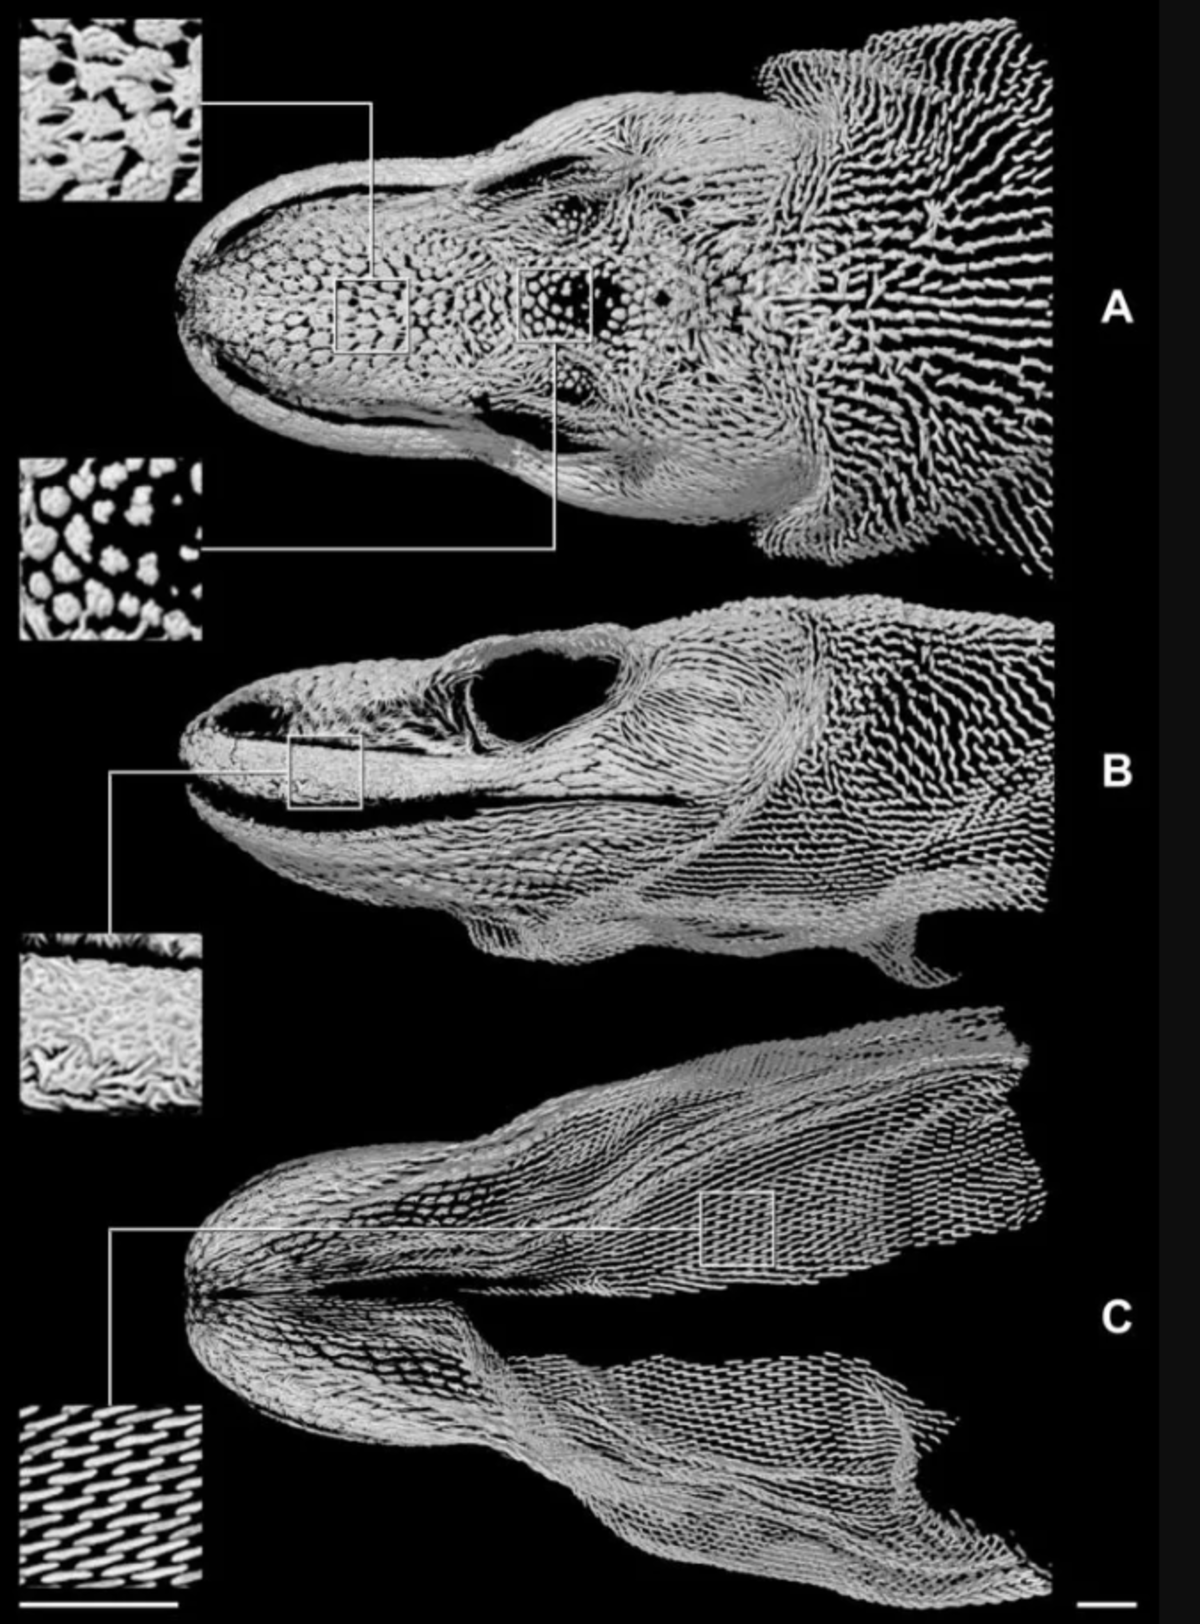 Komodo dragon scan